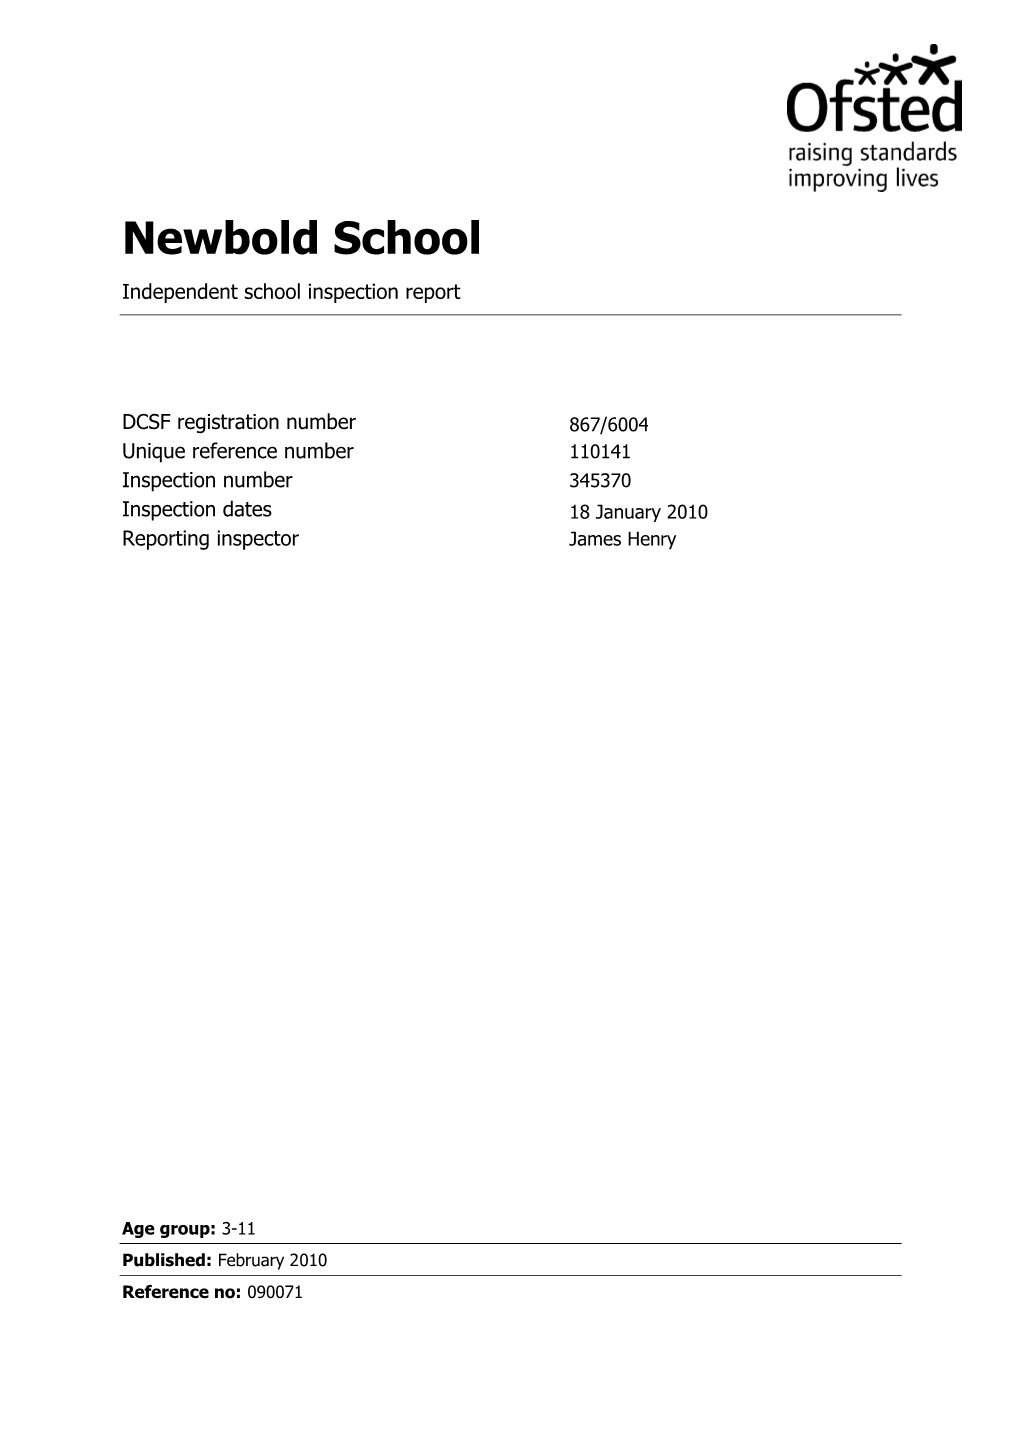 Newbold School Independent School Inspection Report